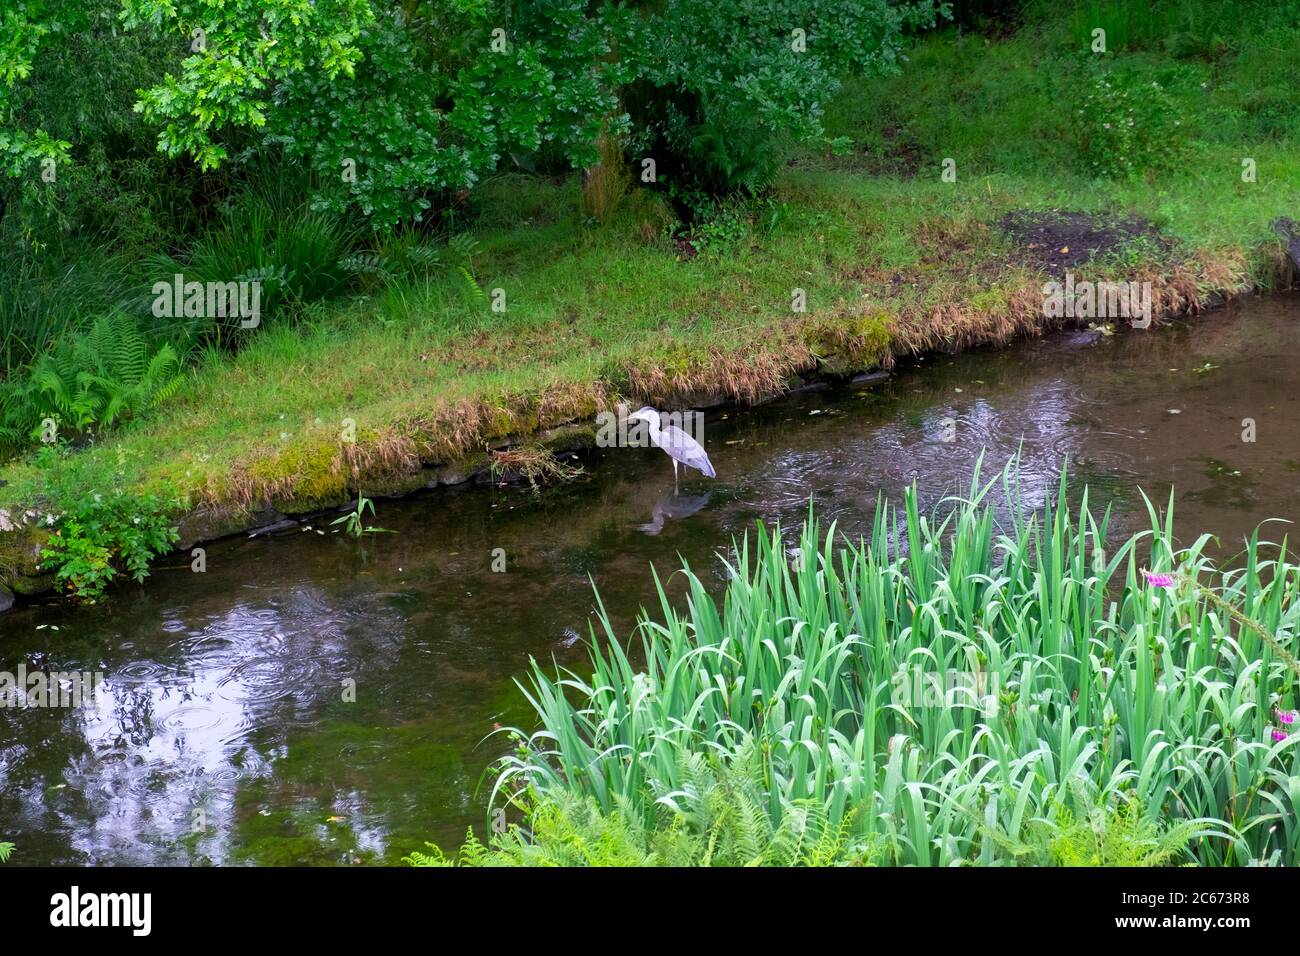 Oiseau de héron gris Ardea cinerea debout se nourrissant dans un étang de jardin avec des plantes d'iris d'eau en été juillet Carmarthenshire pays de Galles UK KATHY DEWITT Banque D'Images